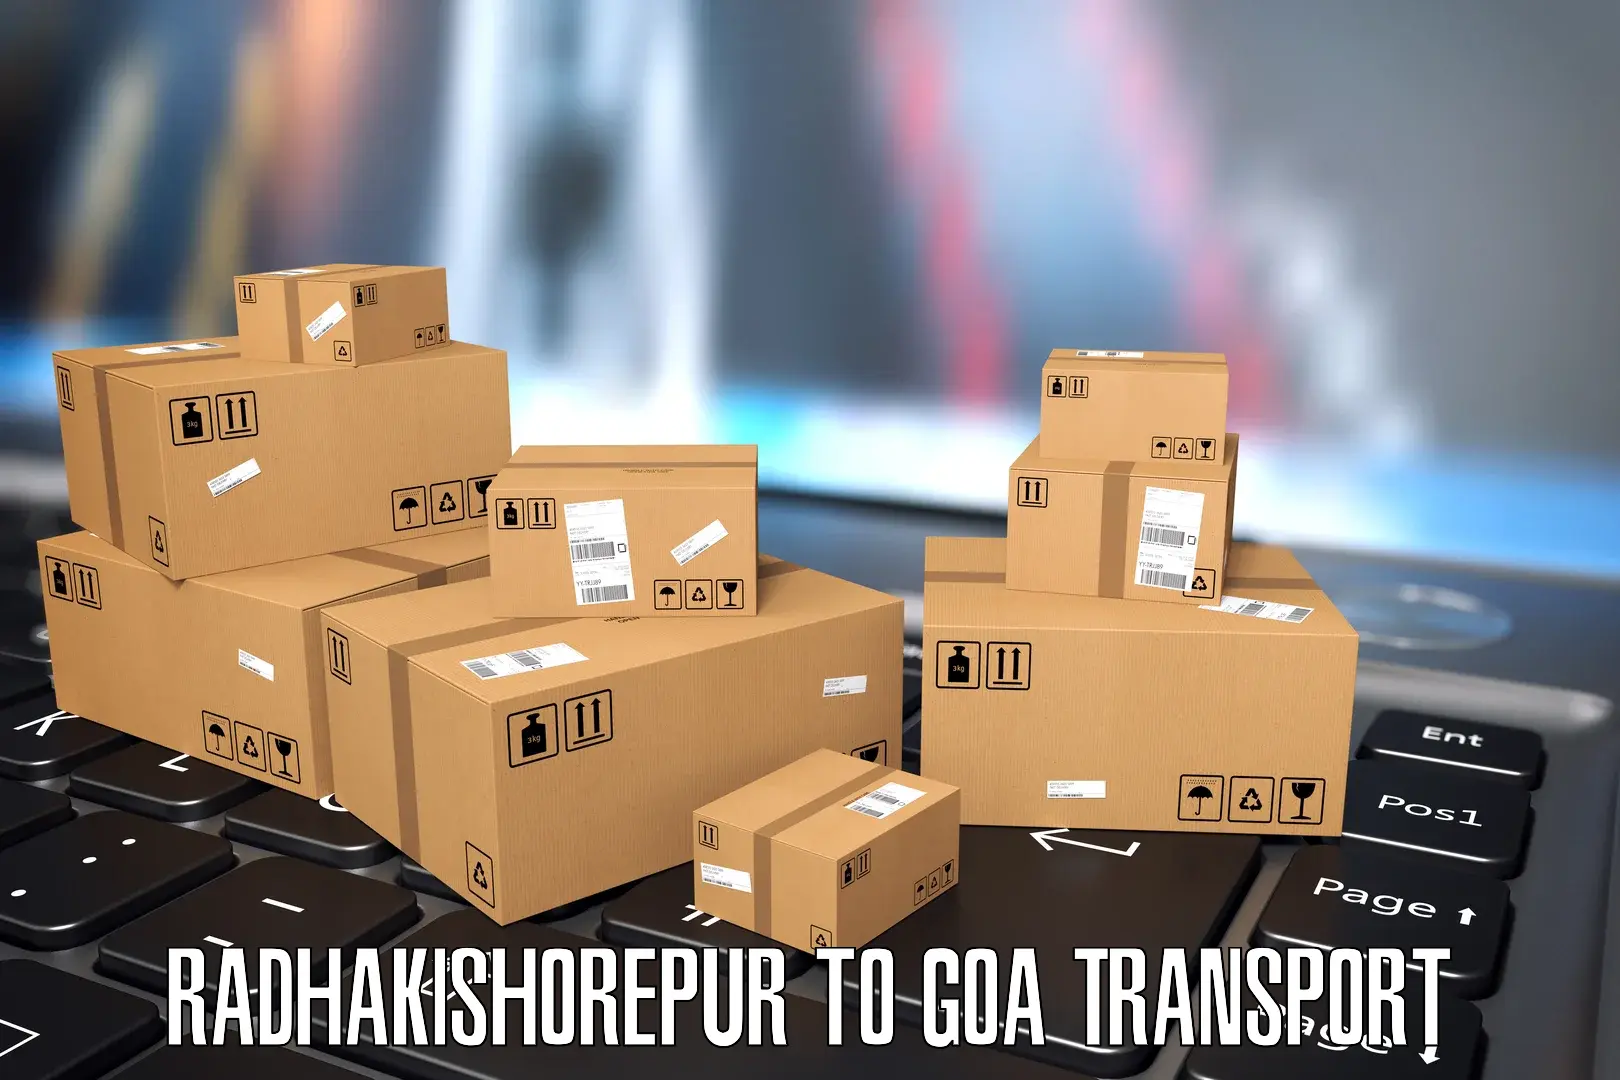 Pick up transport service Radhakishorepur to Goa University